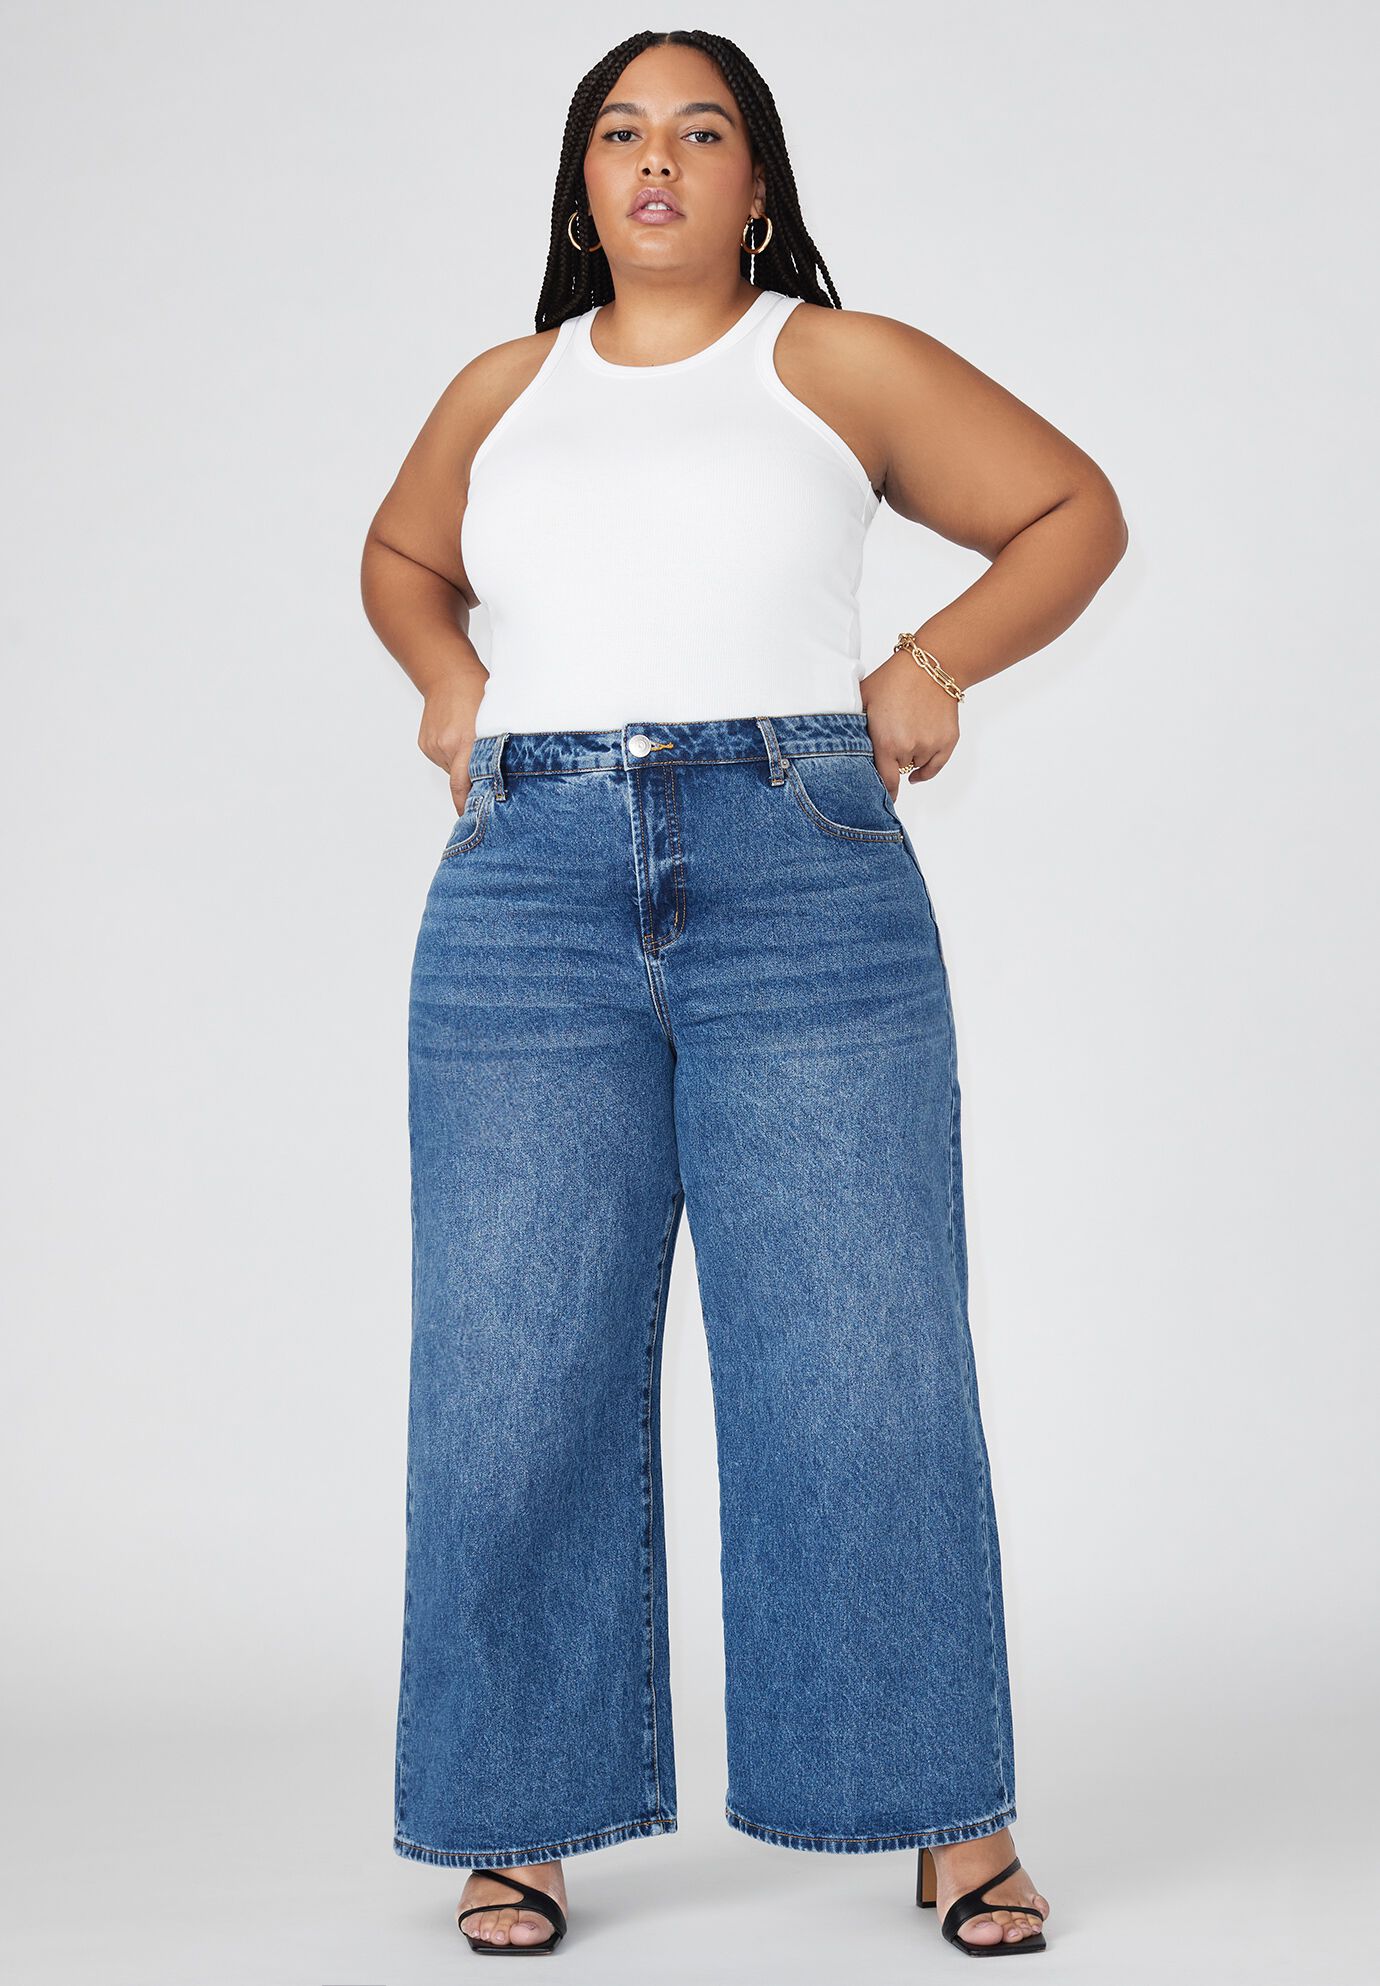 Plus Size Women The Yvette Rigid Wide Jean By ( Size 26 )